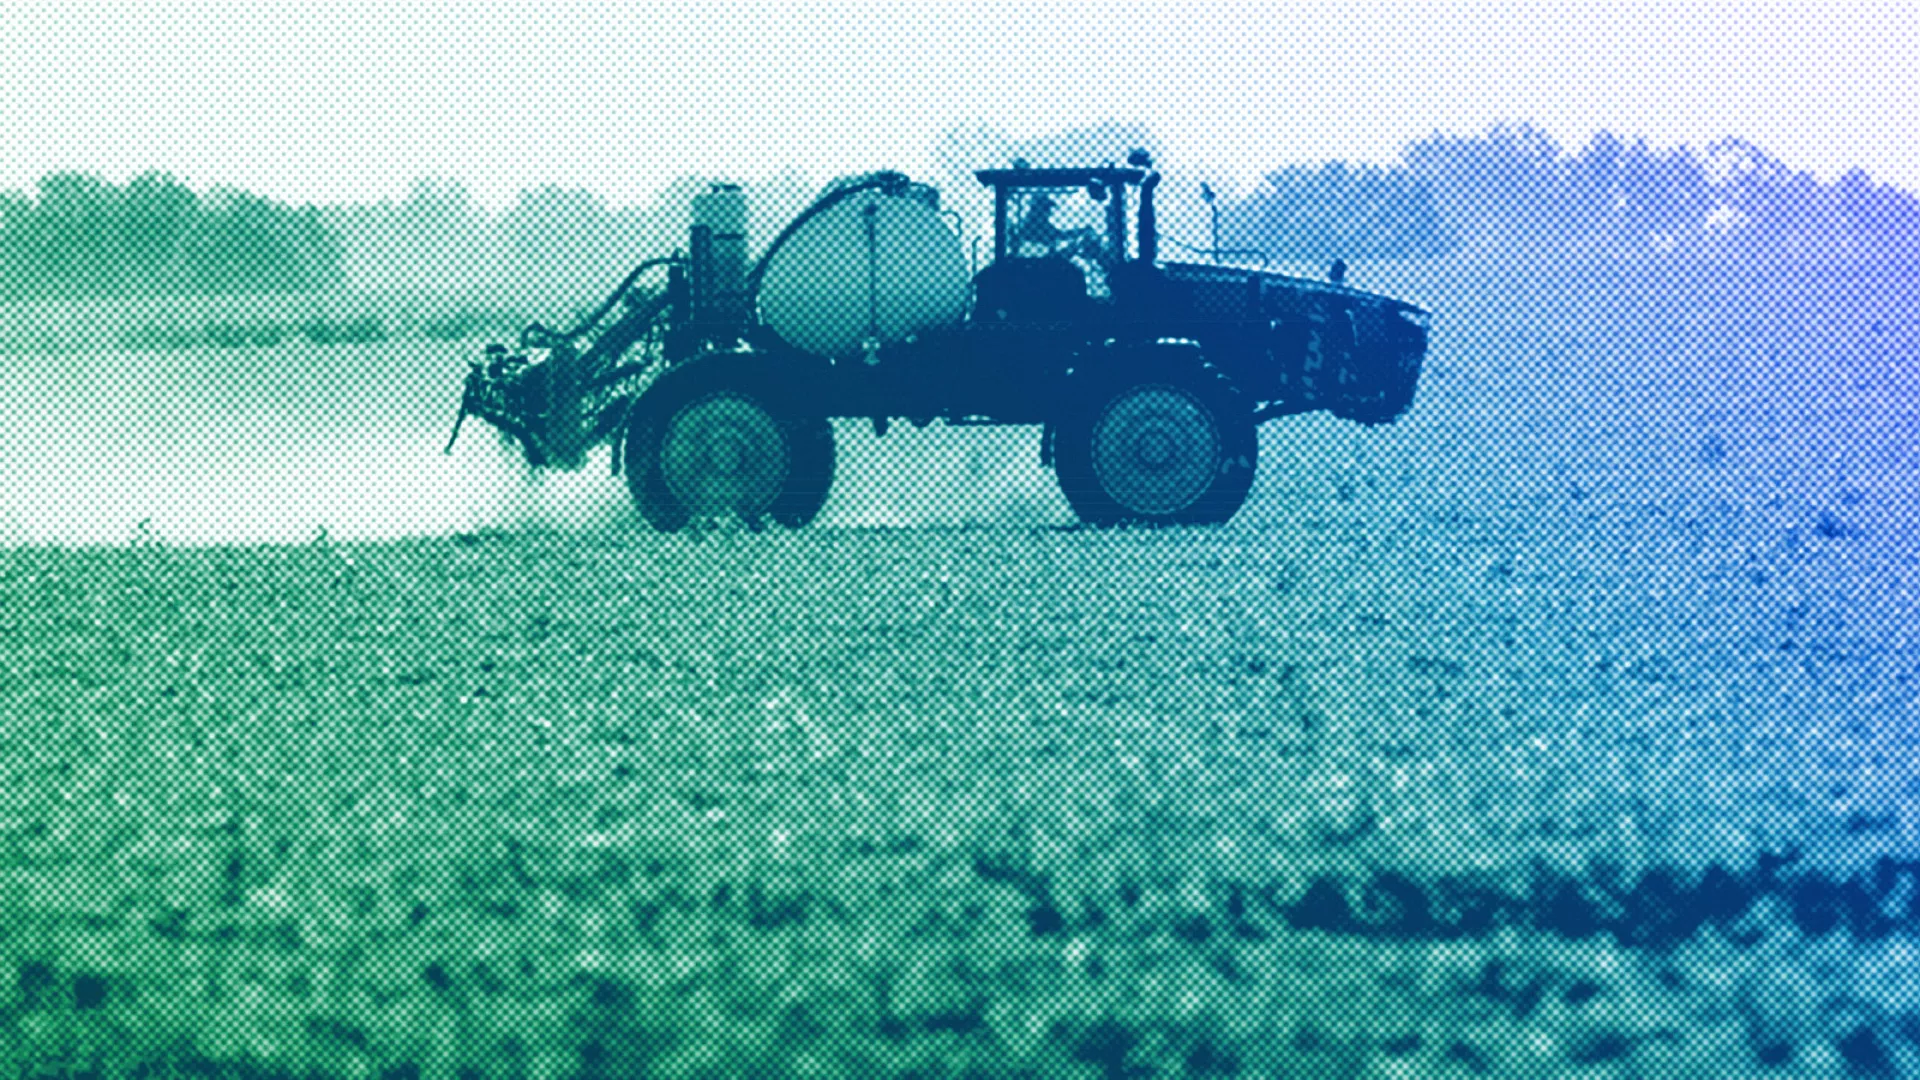 'Evropa të lërë mënjanë grindjen për pesticidet e të kthehet drejt bujqësisë së qëndrueshme'